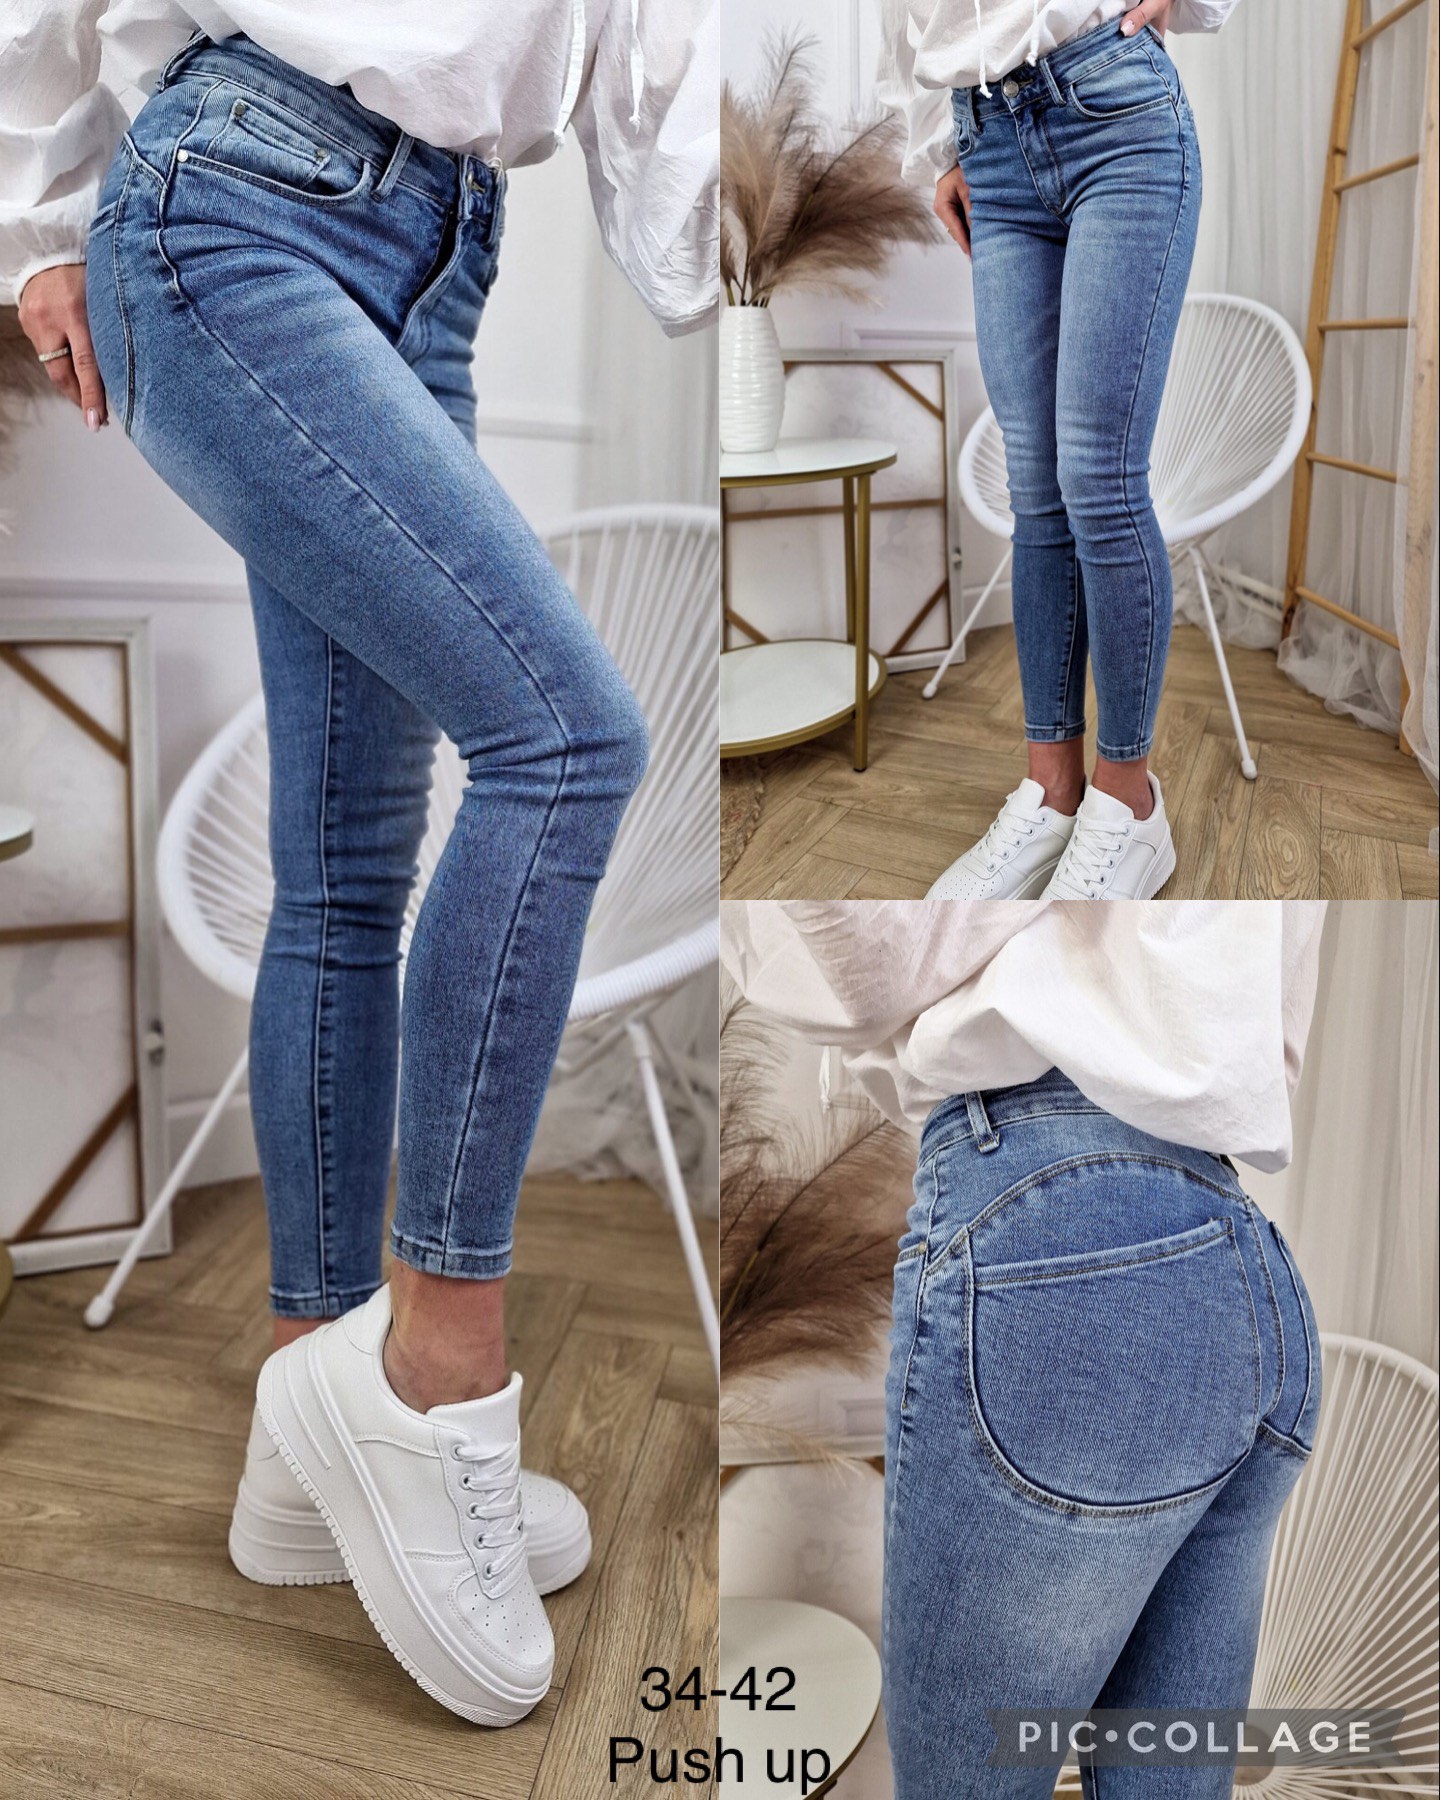 Spodnie damskie jeans Roz 34-42.  Paczka 10szt